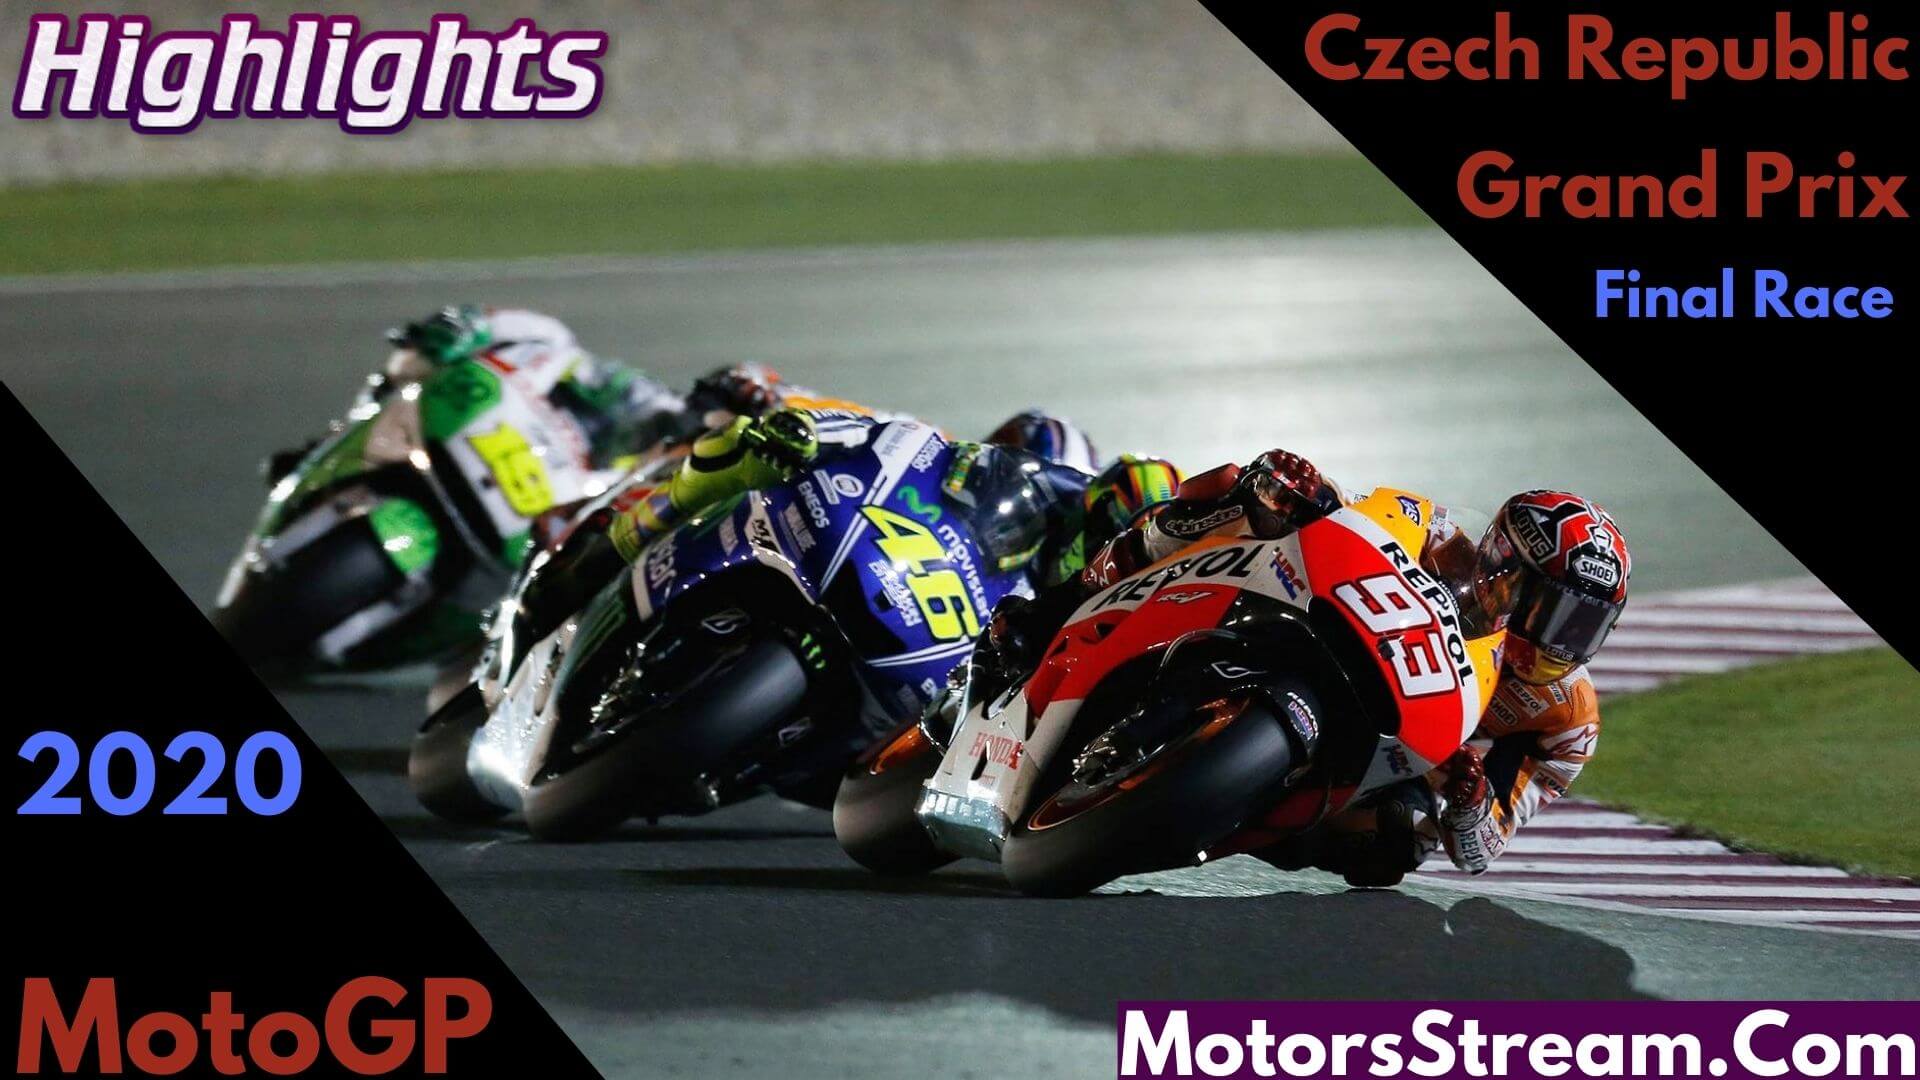 Czech Republic Grand Prix Highlights 2020 MotoGP